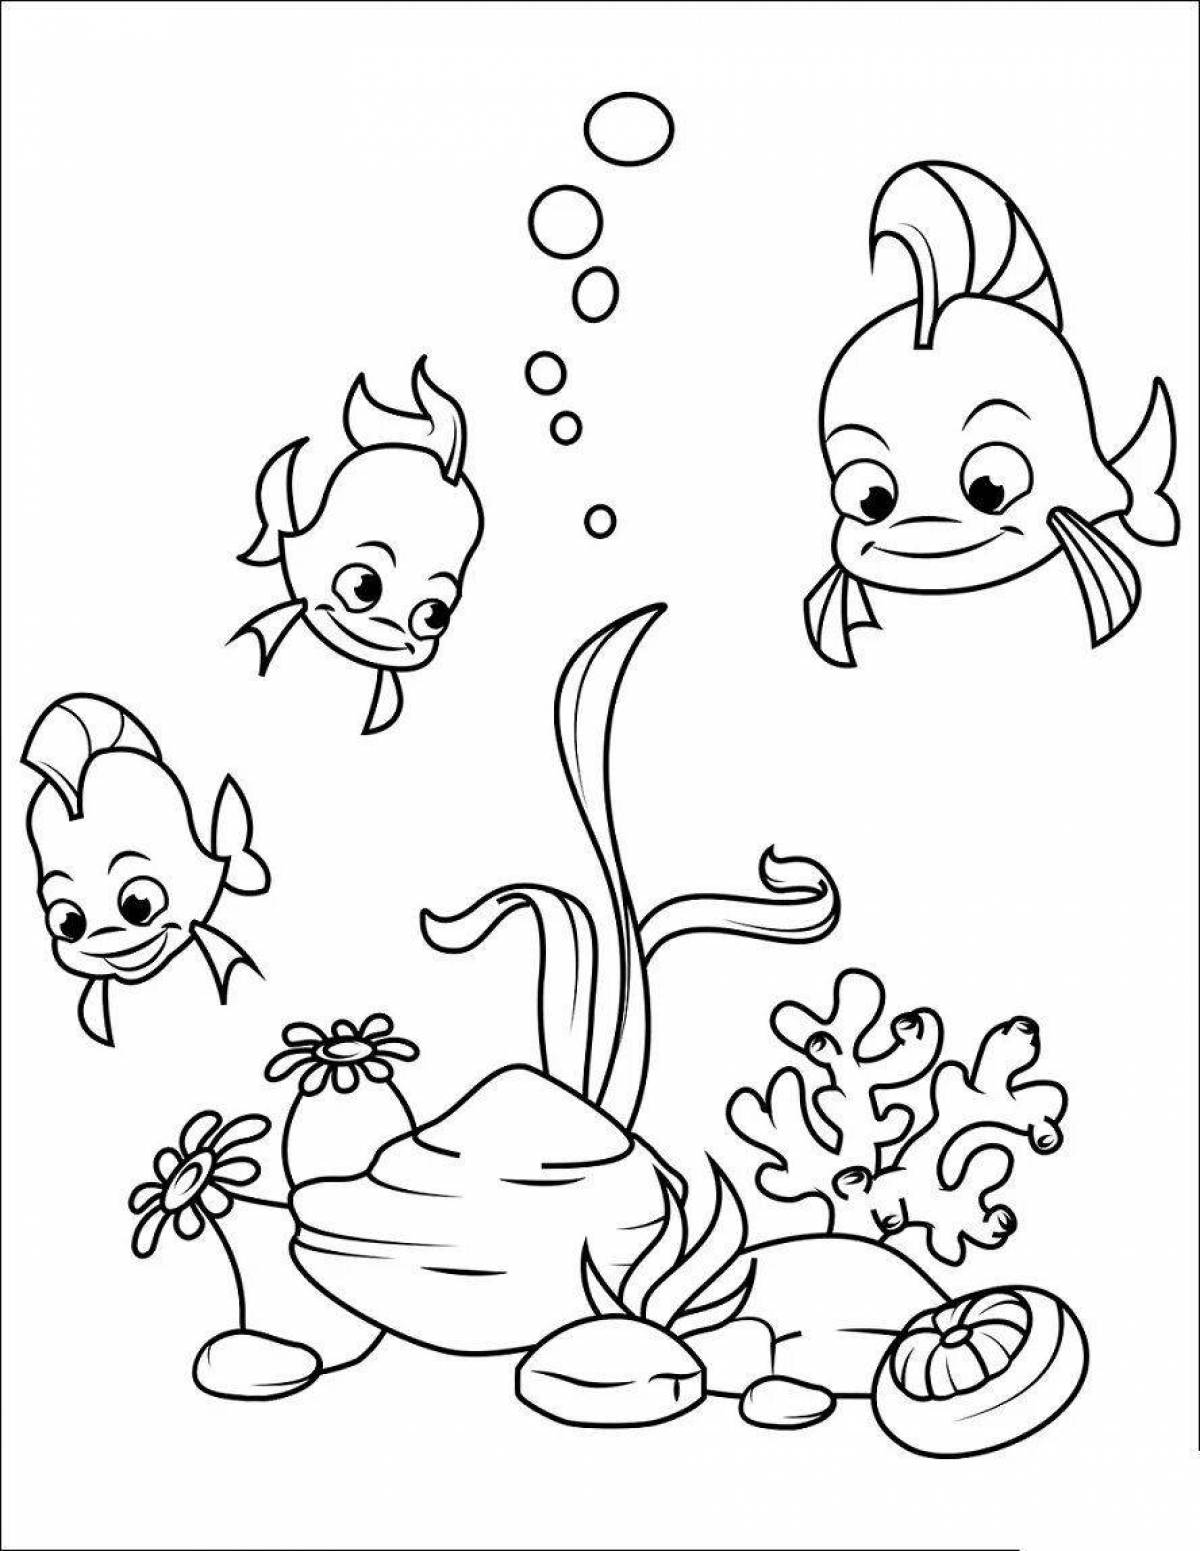 Joyful aquarium fish coloring book for 5-6 year olds